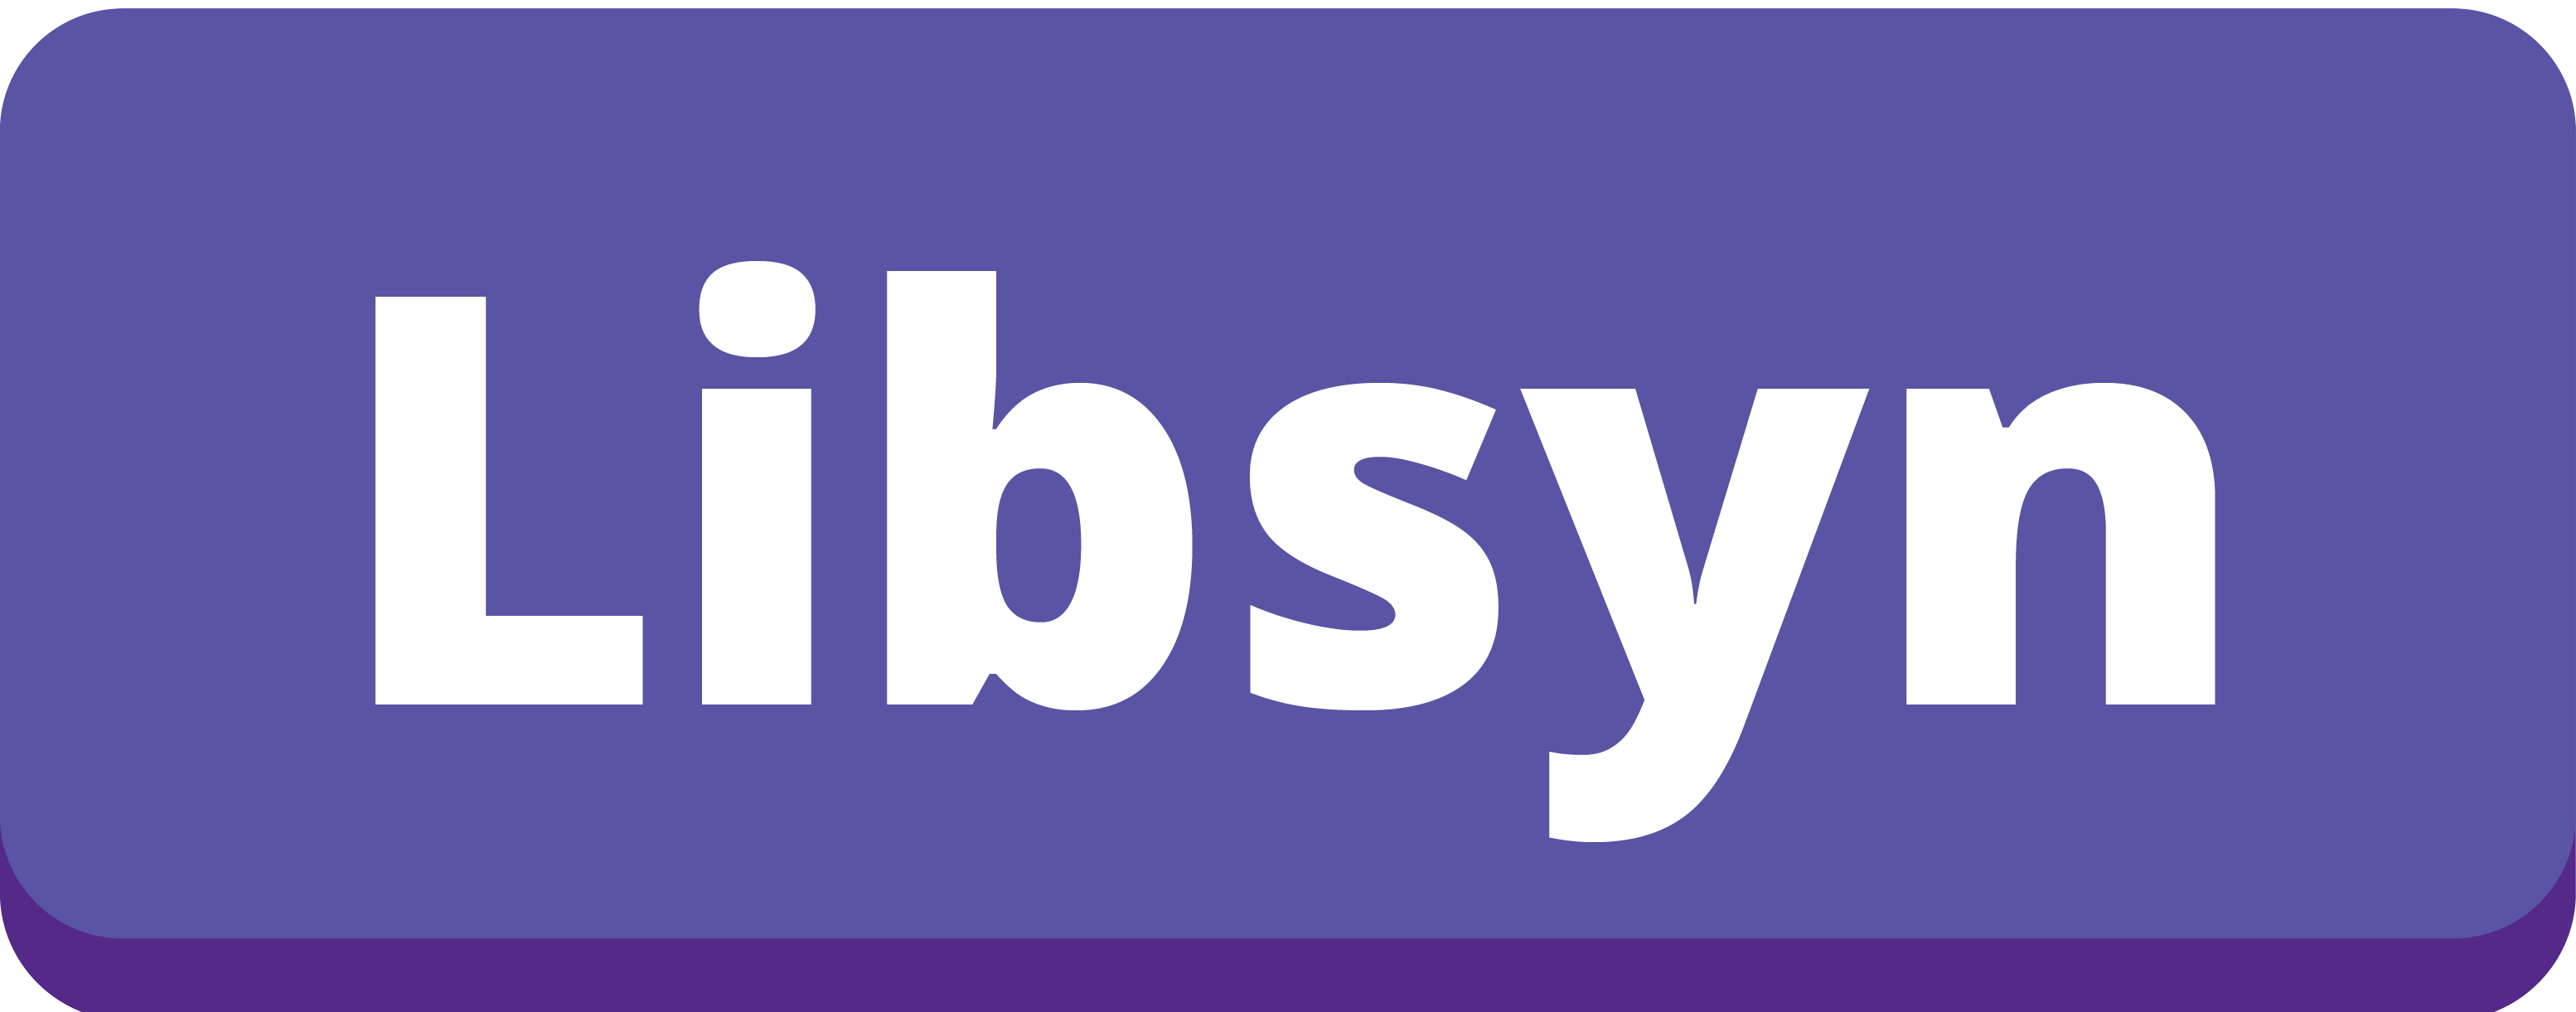 Libsyn